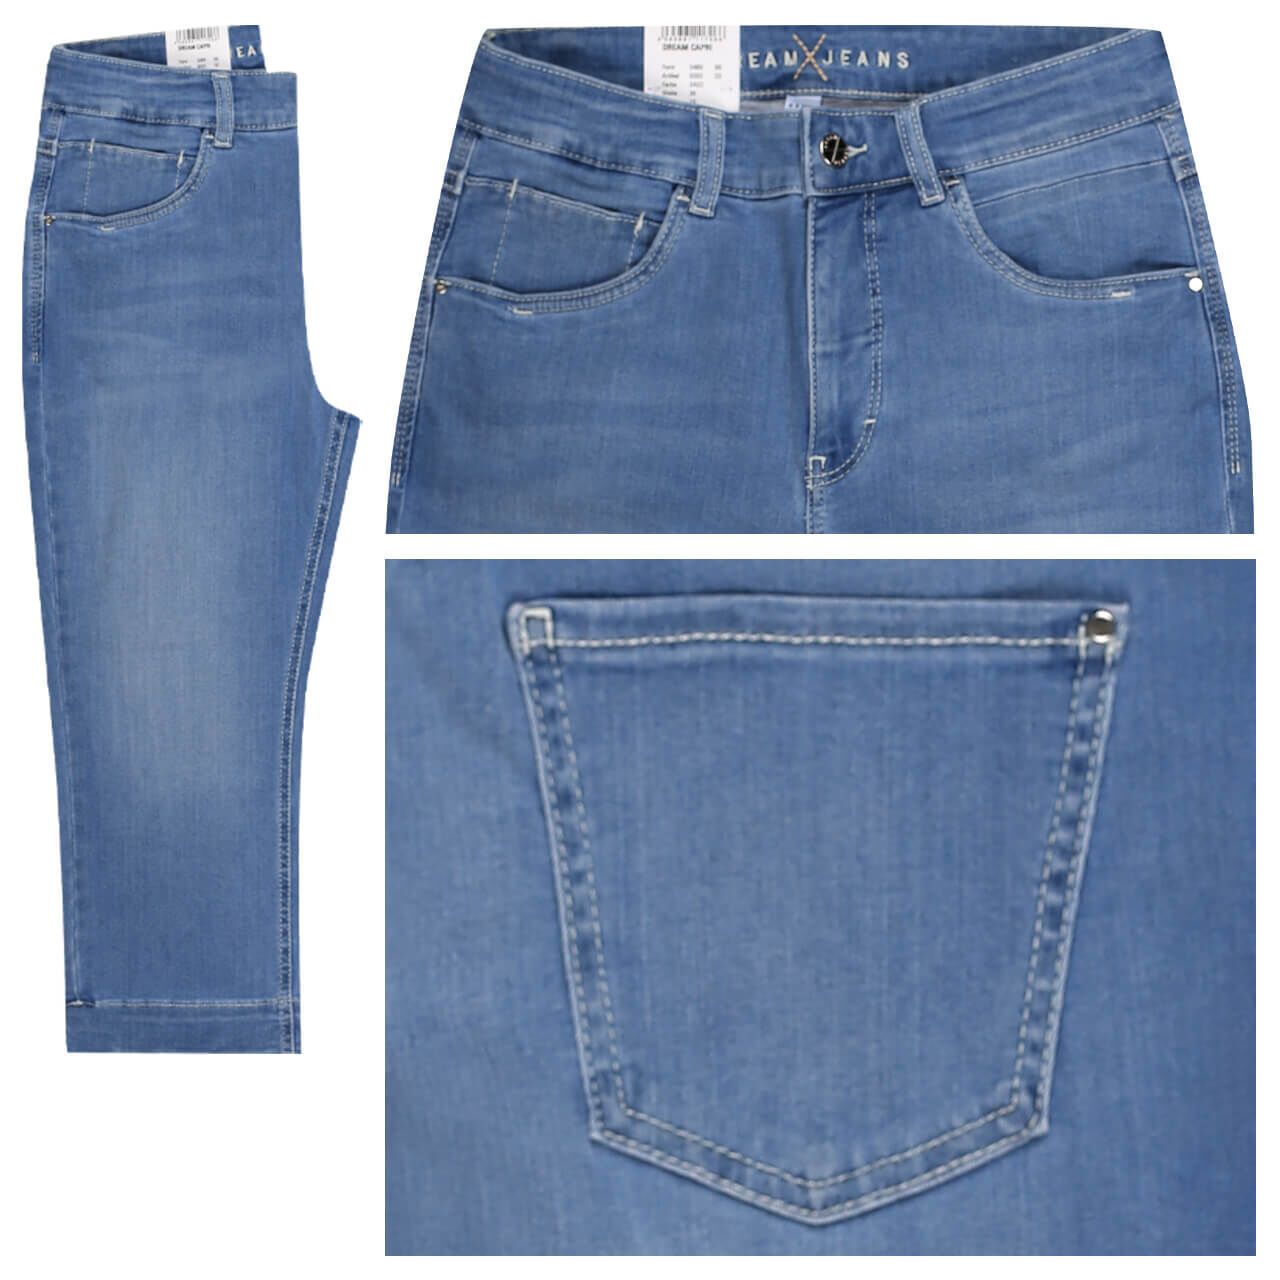 MAC Jeans Dream Capri für Damen in Hellblau angewaschen, FarbNr.: D422